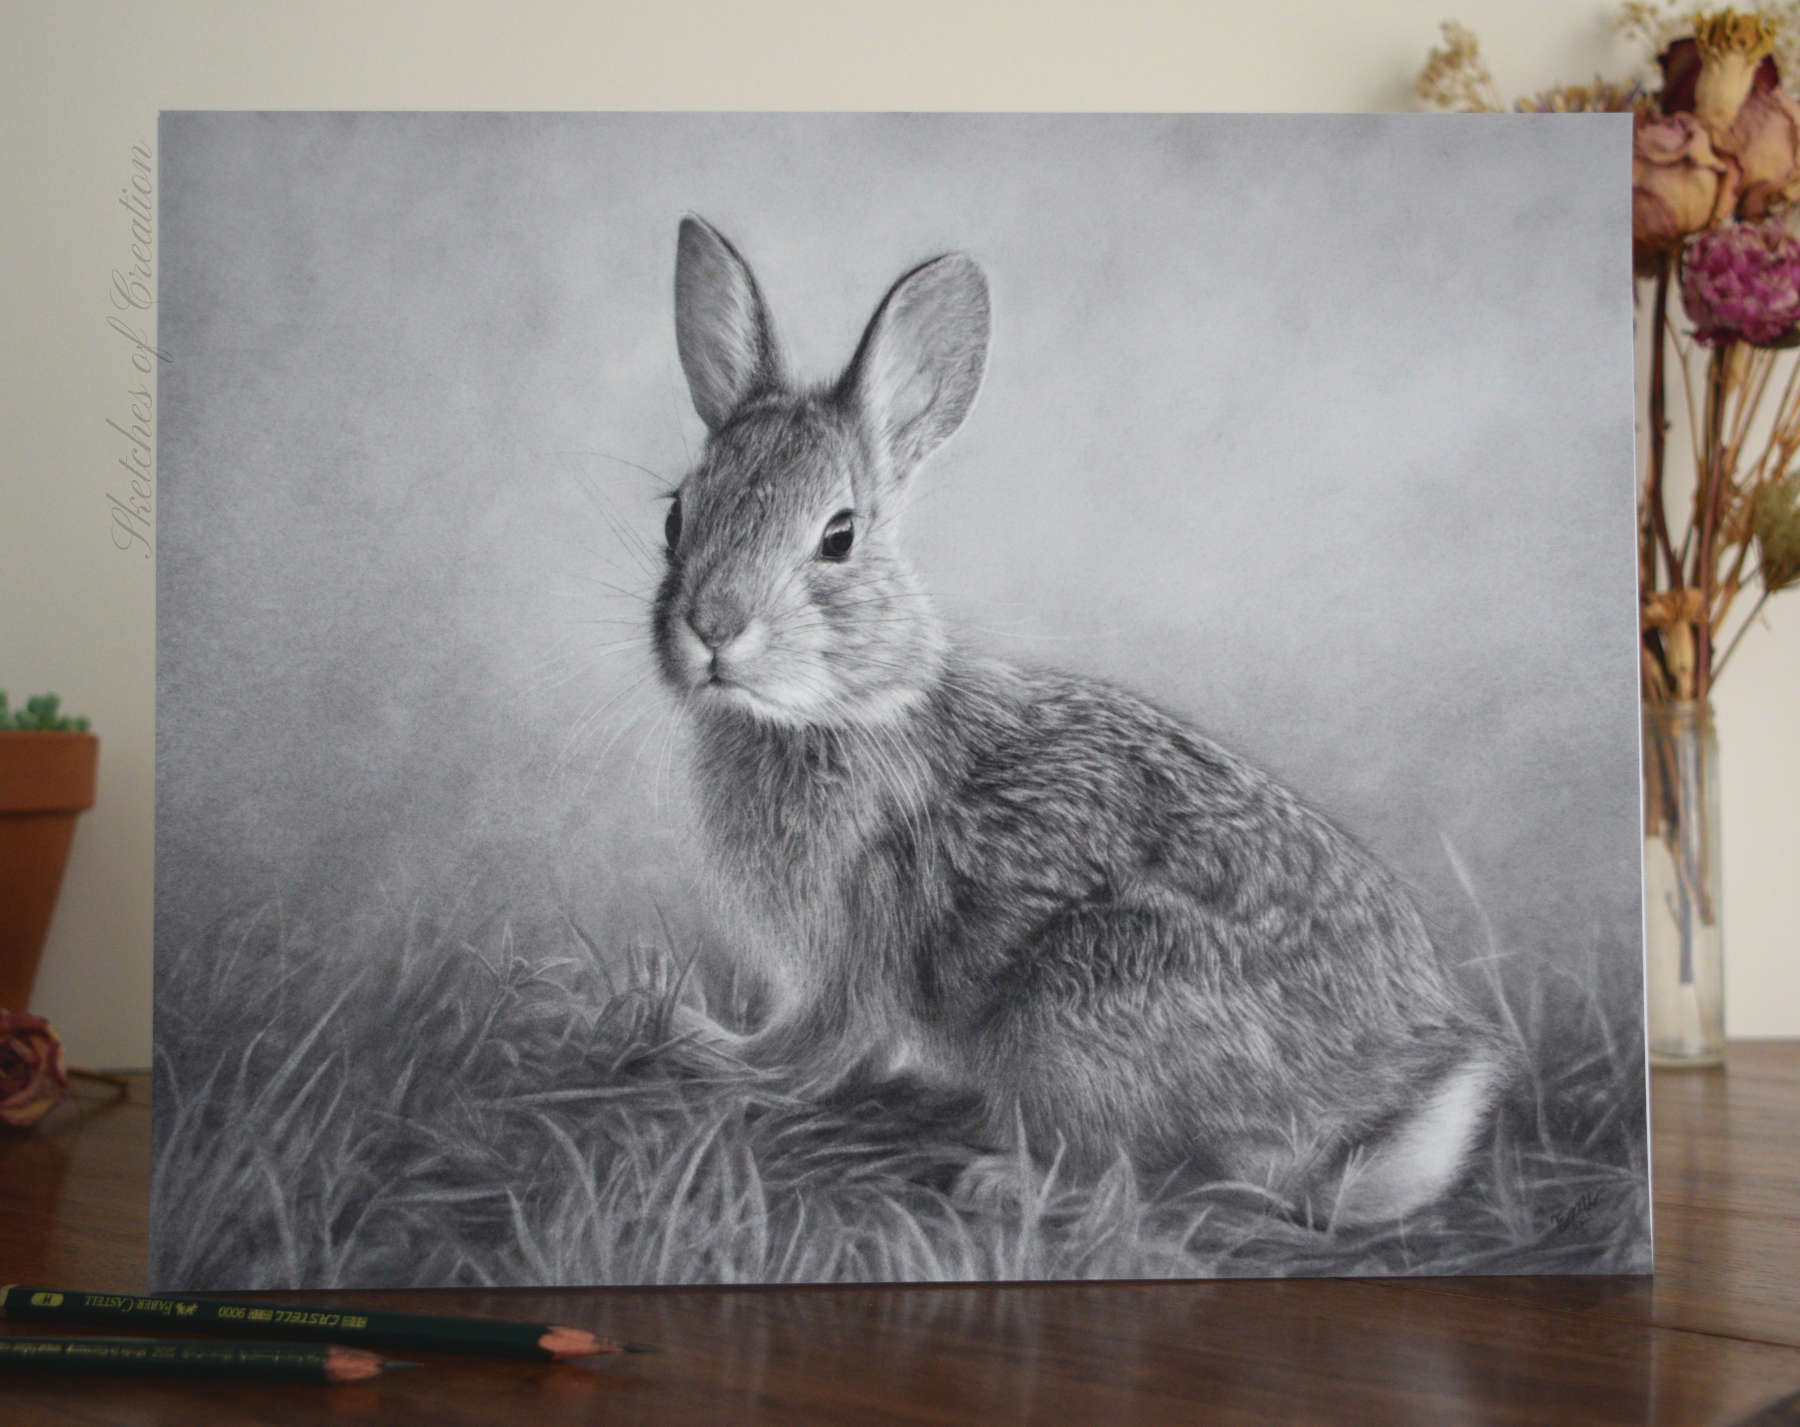 A print of a rabbit